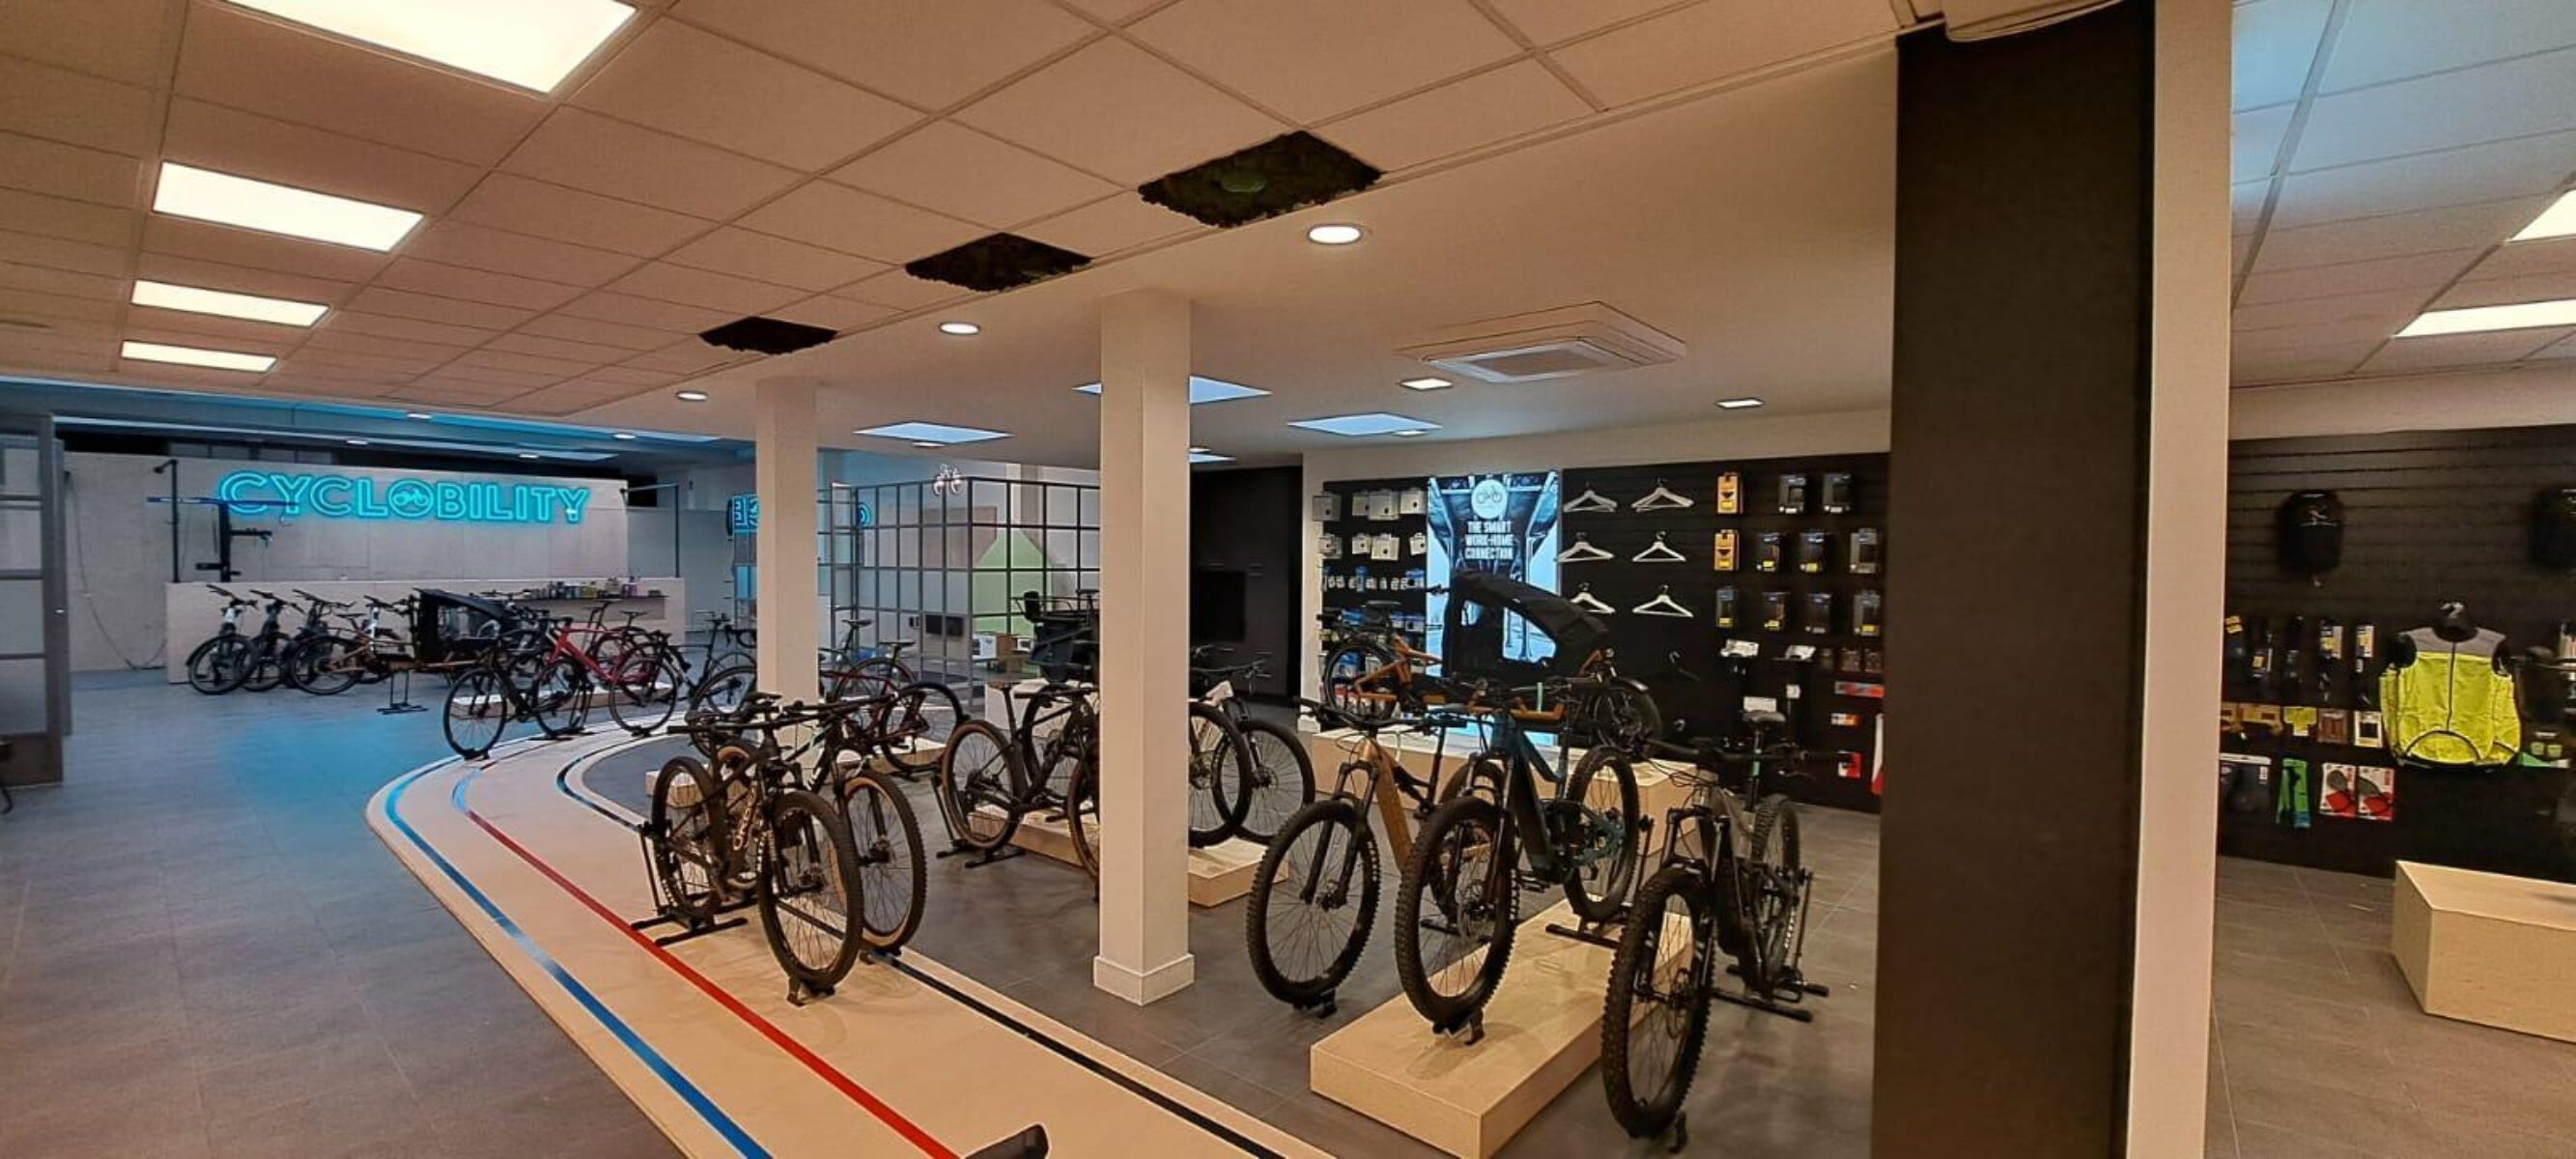 Binnenkant van de Cyclobility fietsenwinkel in Sint-Niklaas. Op de foto zijn heel wat speed pedelecs, elektrische fietsen en koersfietsen te zien van gerenomeerde merken zoals BMC, Stromer en Riese & Müller.